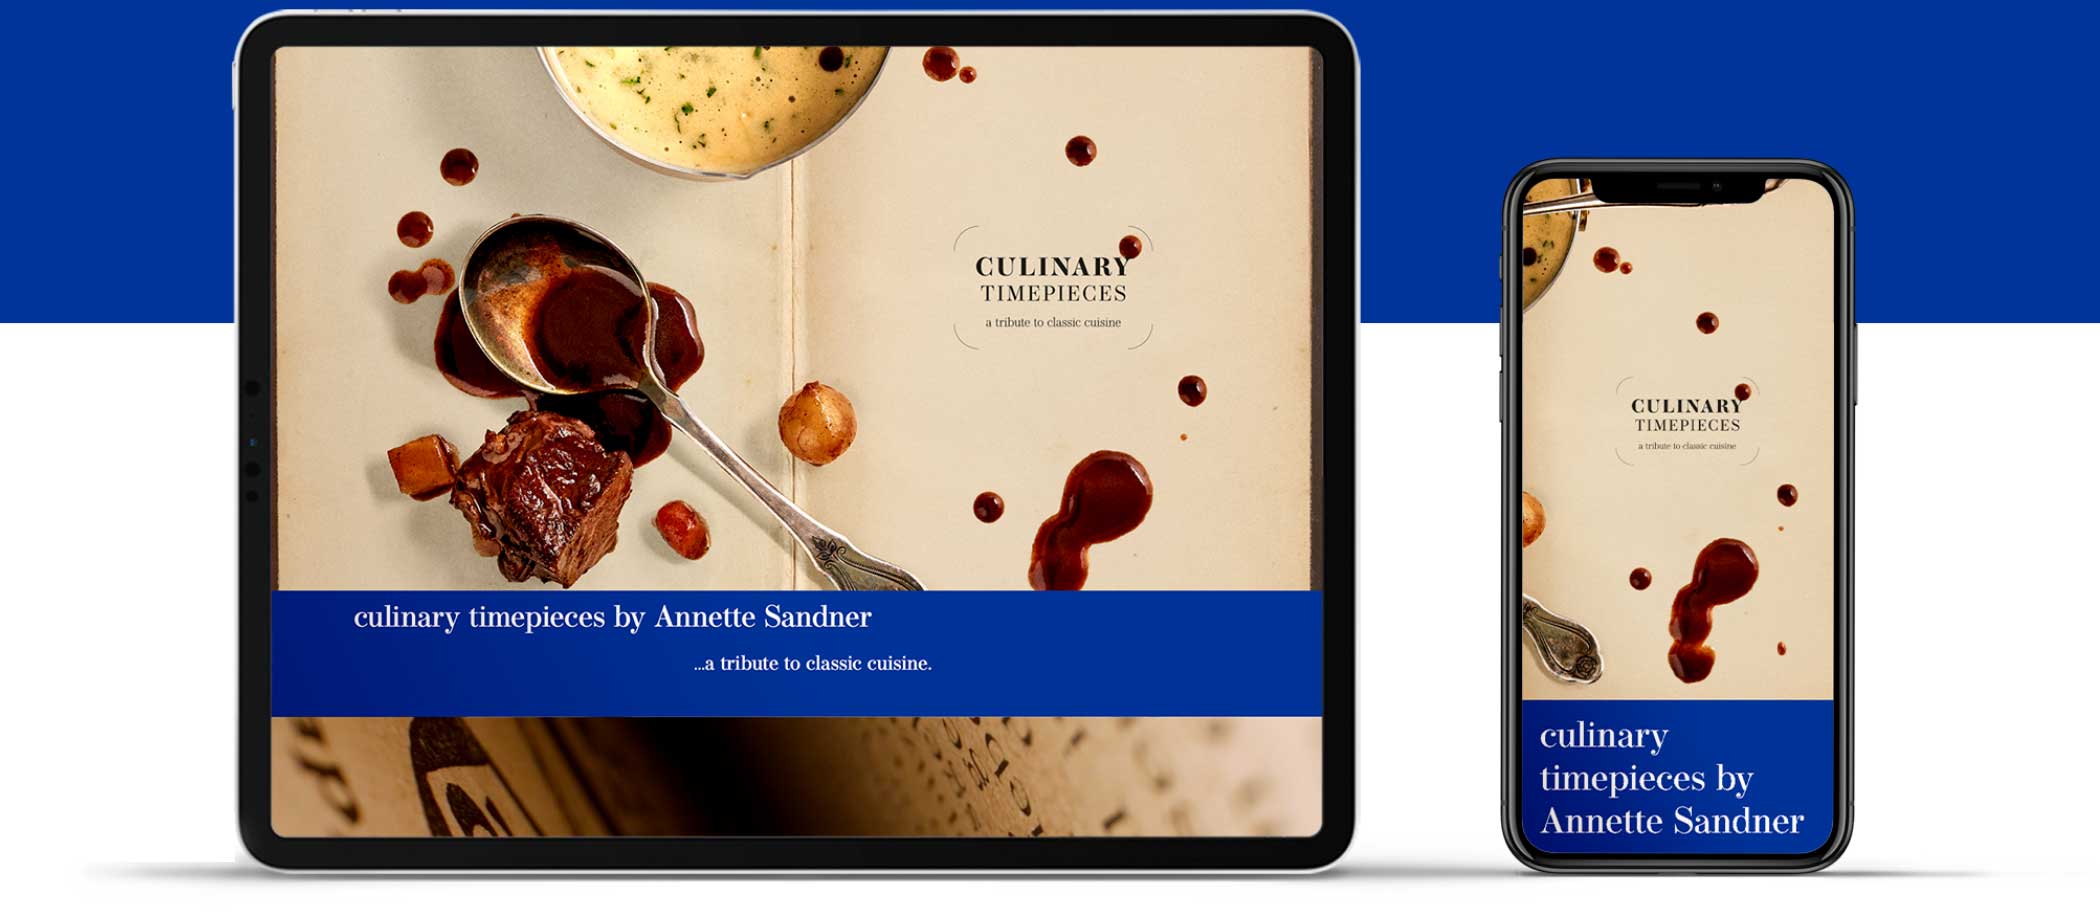 Webdesign für "Culinary Timepieces": responsive auf Desktop und Handy